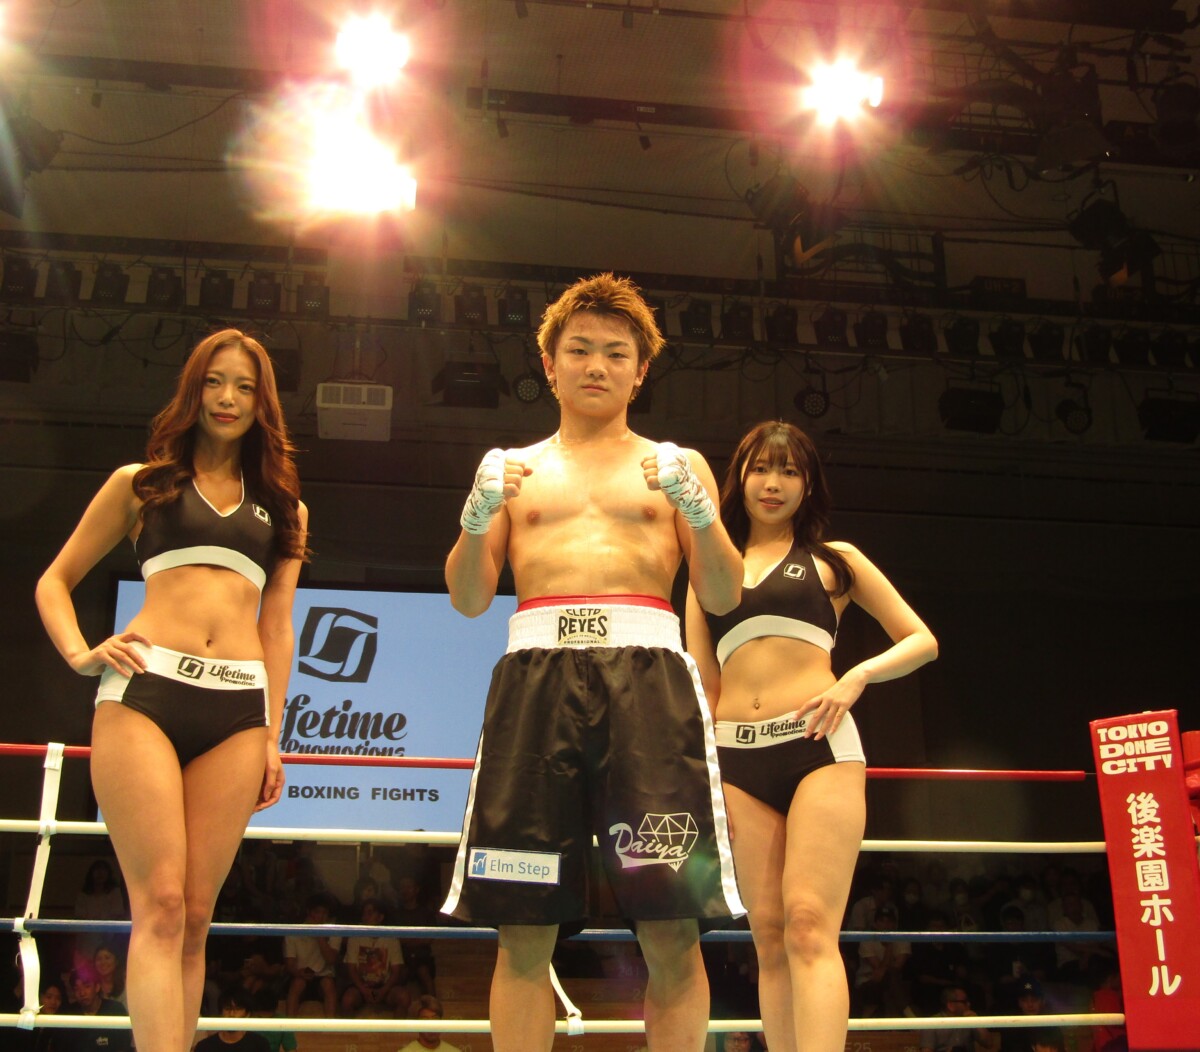 118秒KOでデビュー戦を飾った吉良大弥。世界は通過点と豪語する